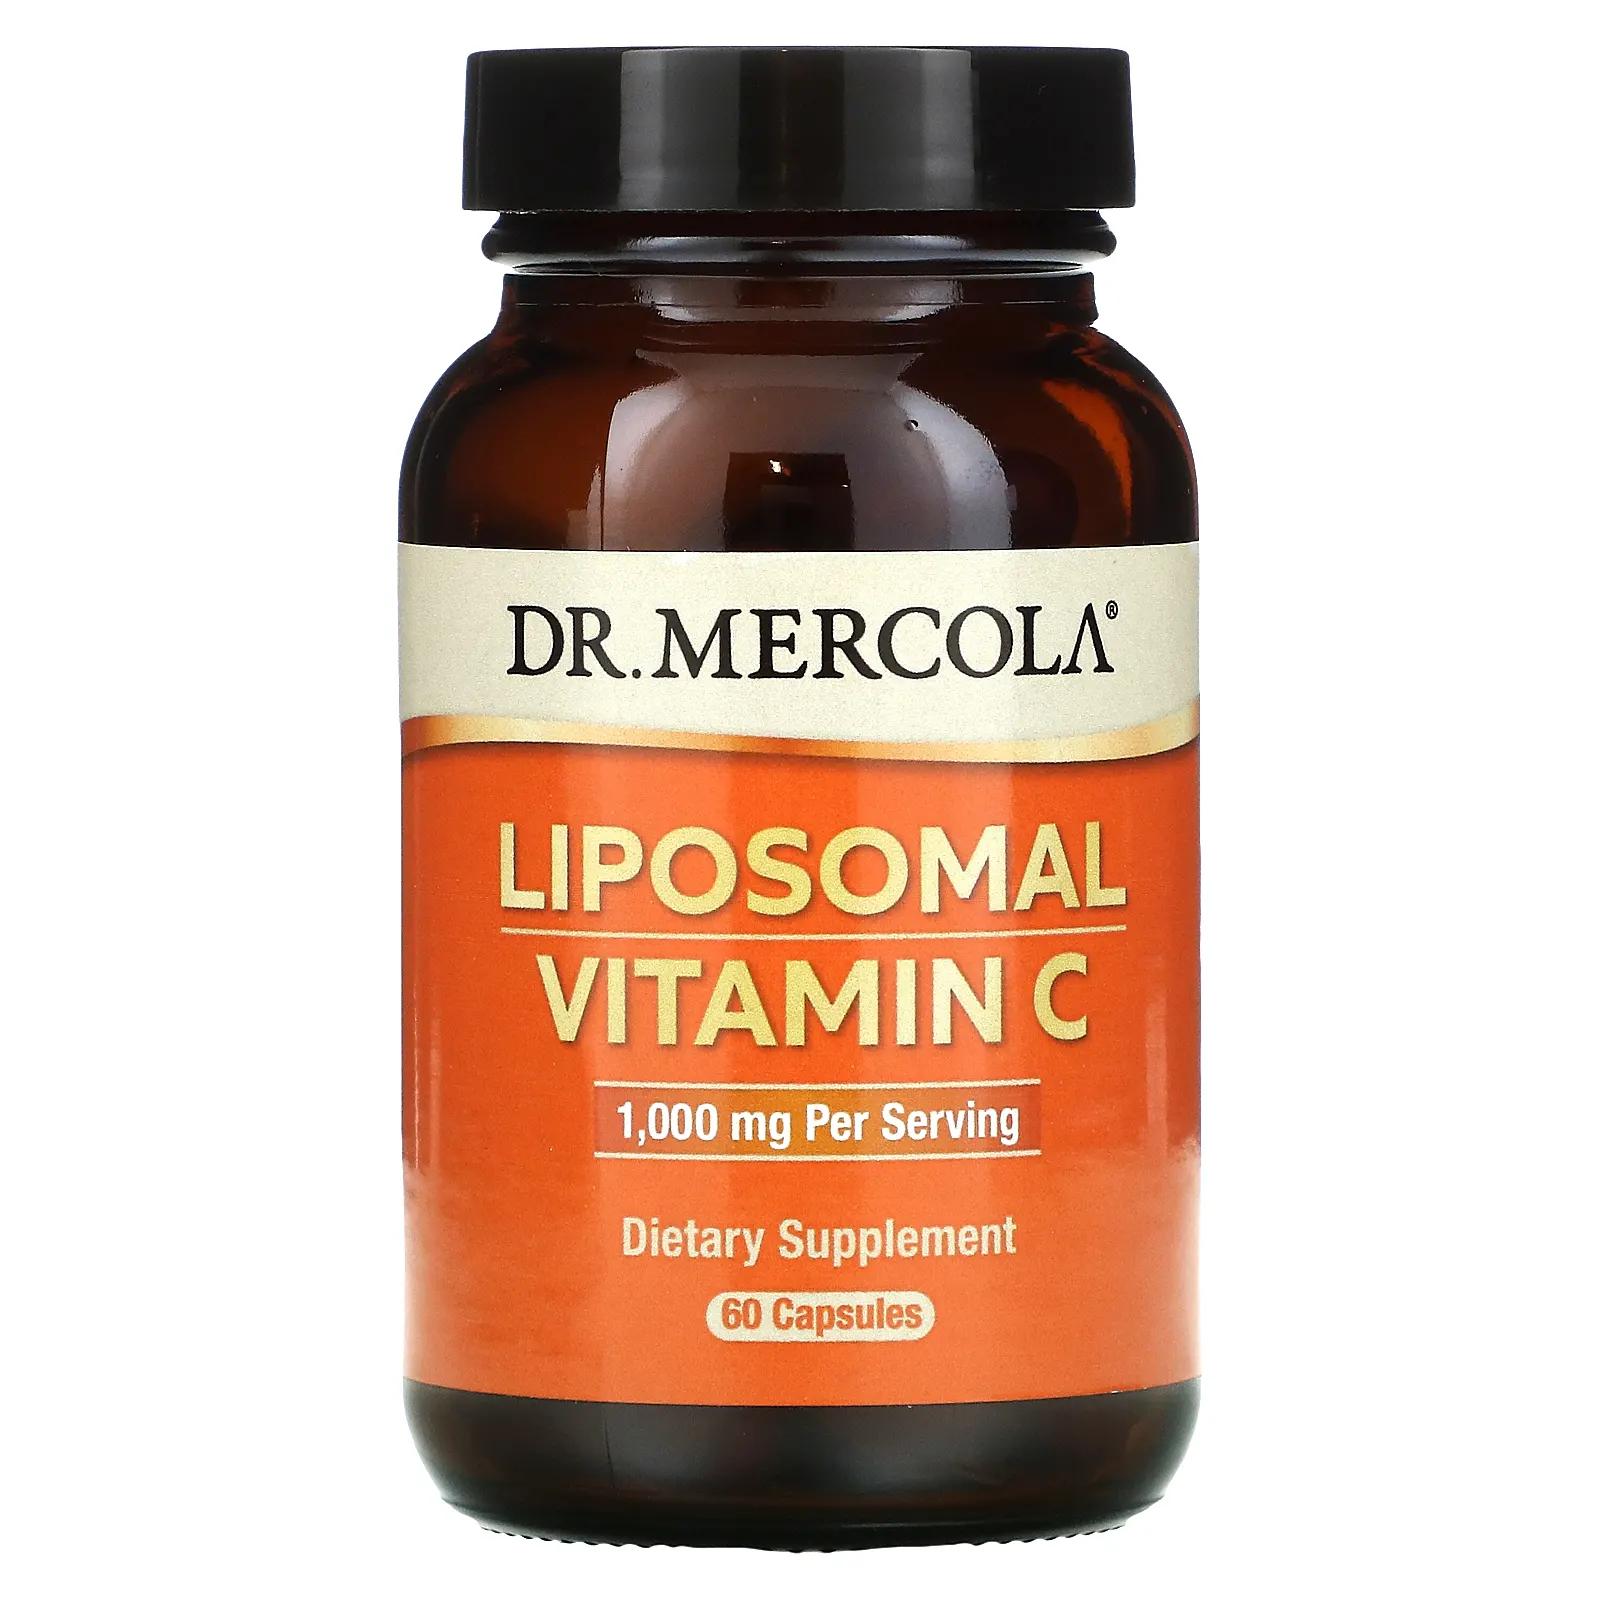 Dr. Mercola Витамин C в липосомах 1000 мг 60 липосомных капсул mercola solspring органическое золотое молоко 2 64 унции 75 г dr mercola